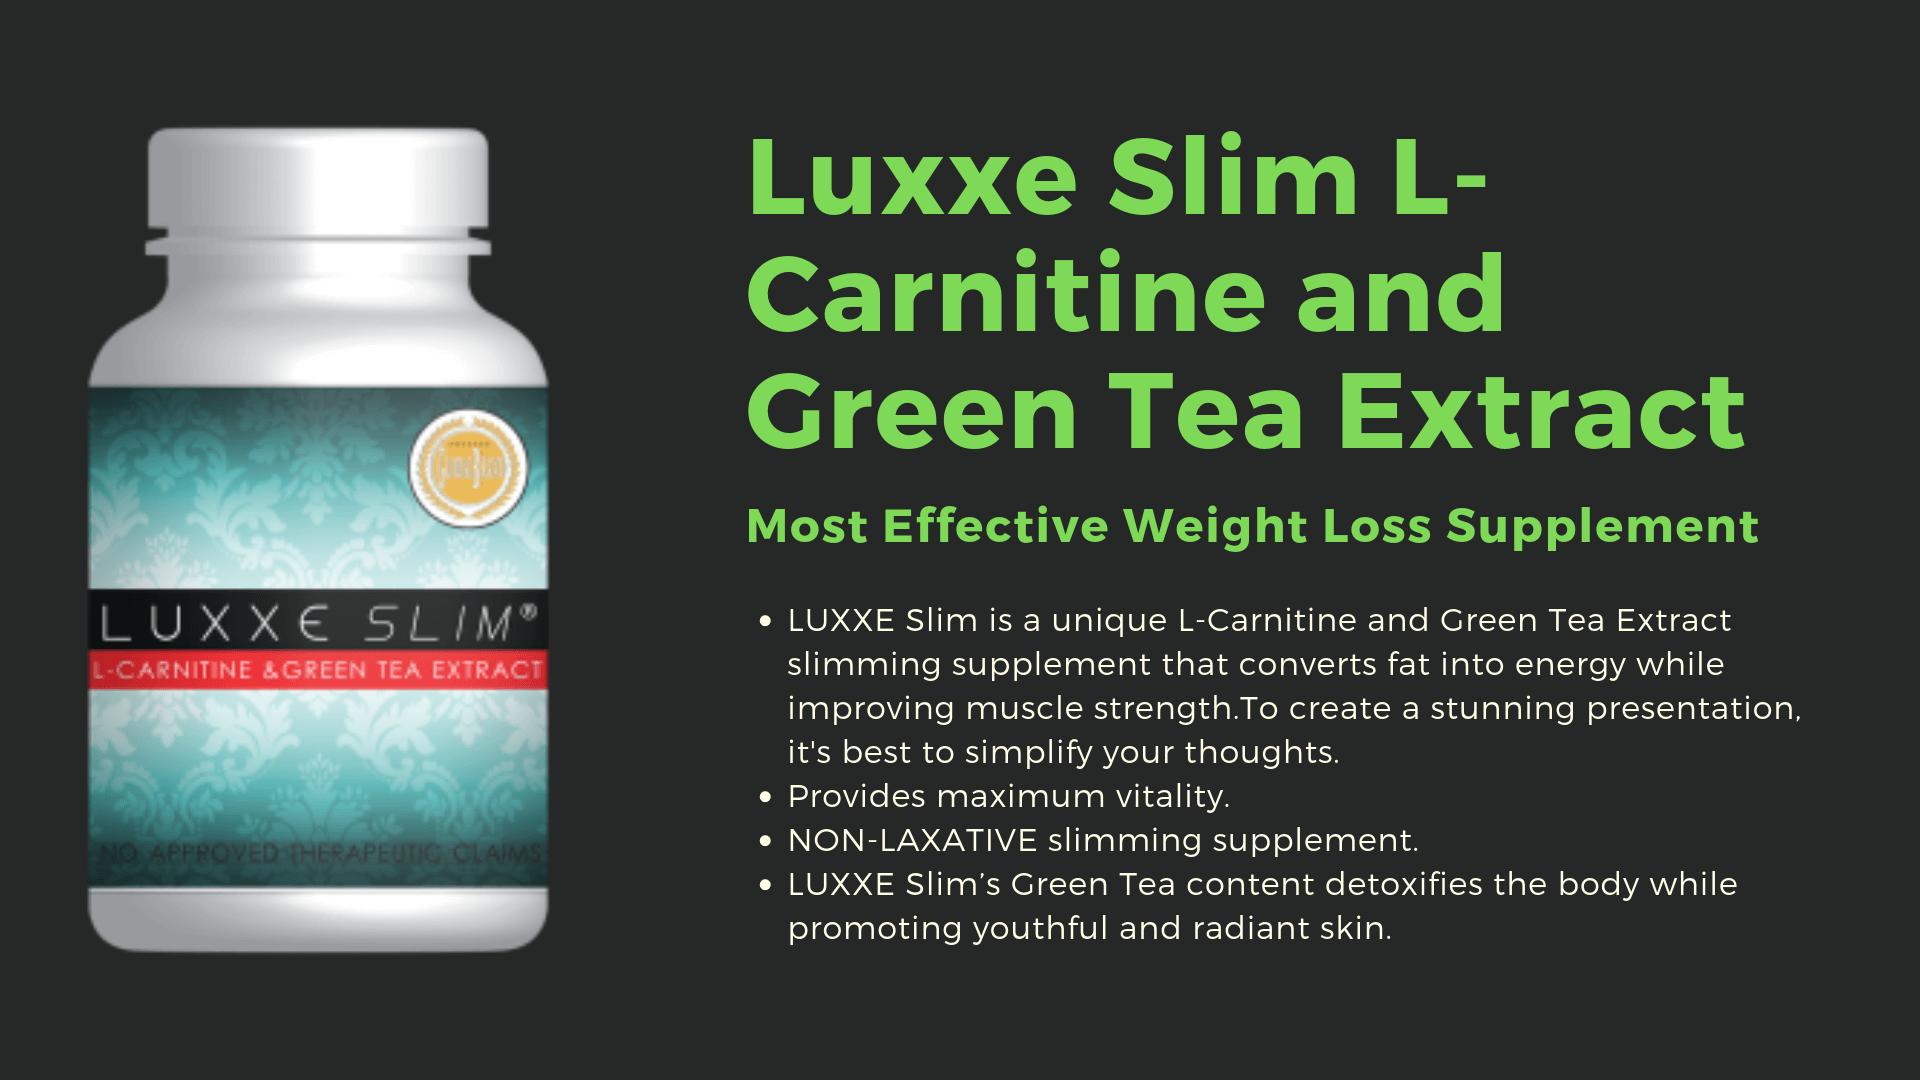 luxexe slim l-carnitine et extrait de thé vert détails de l'image